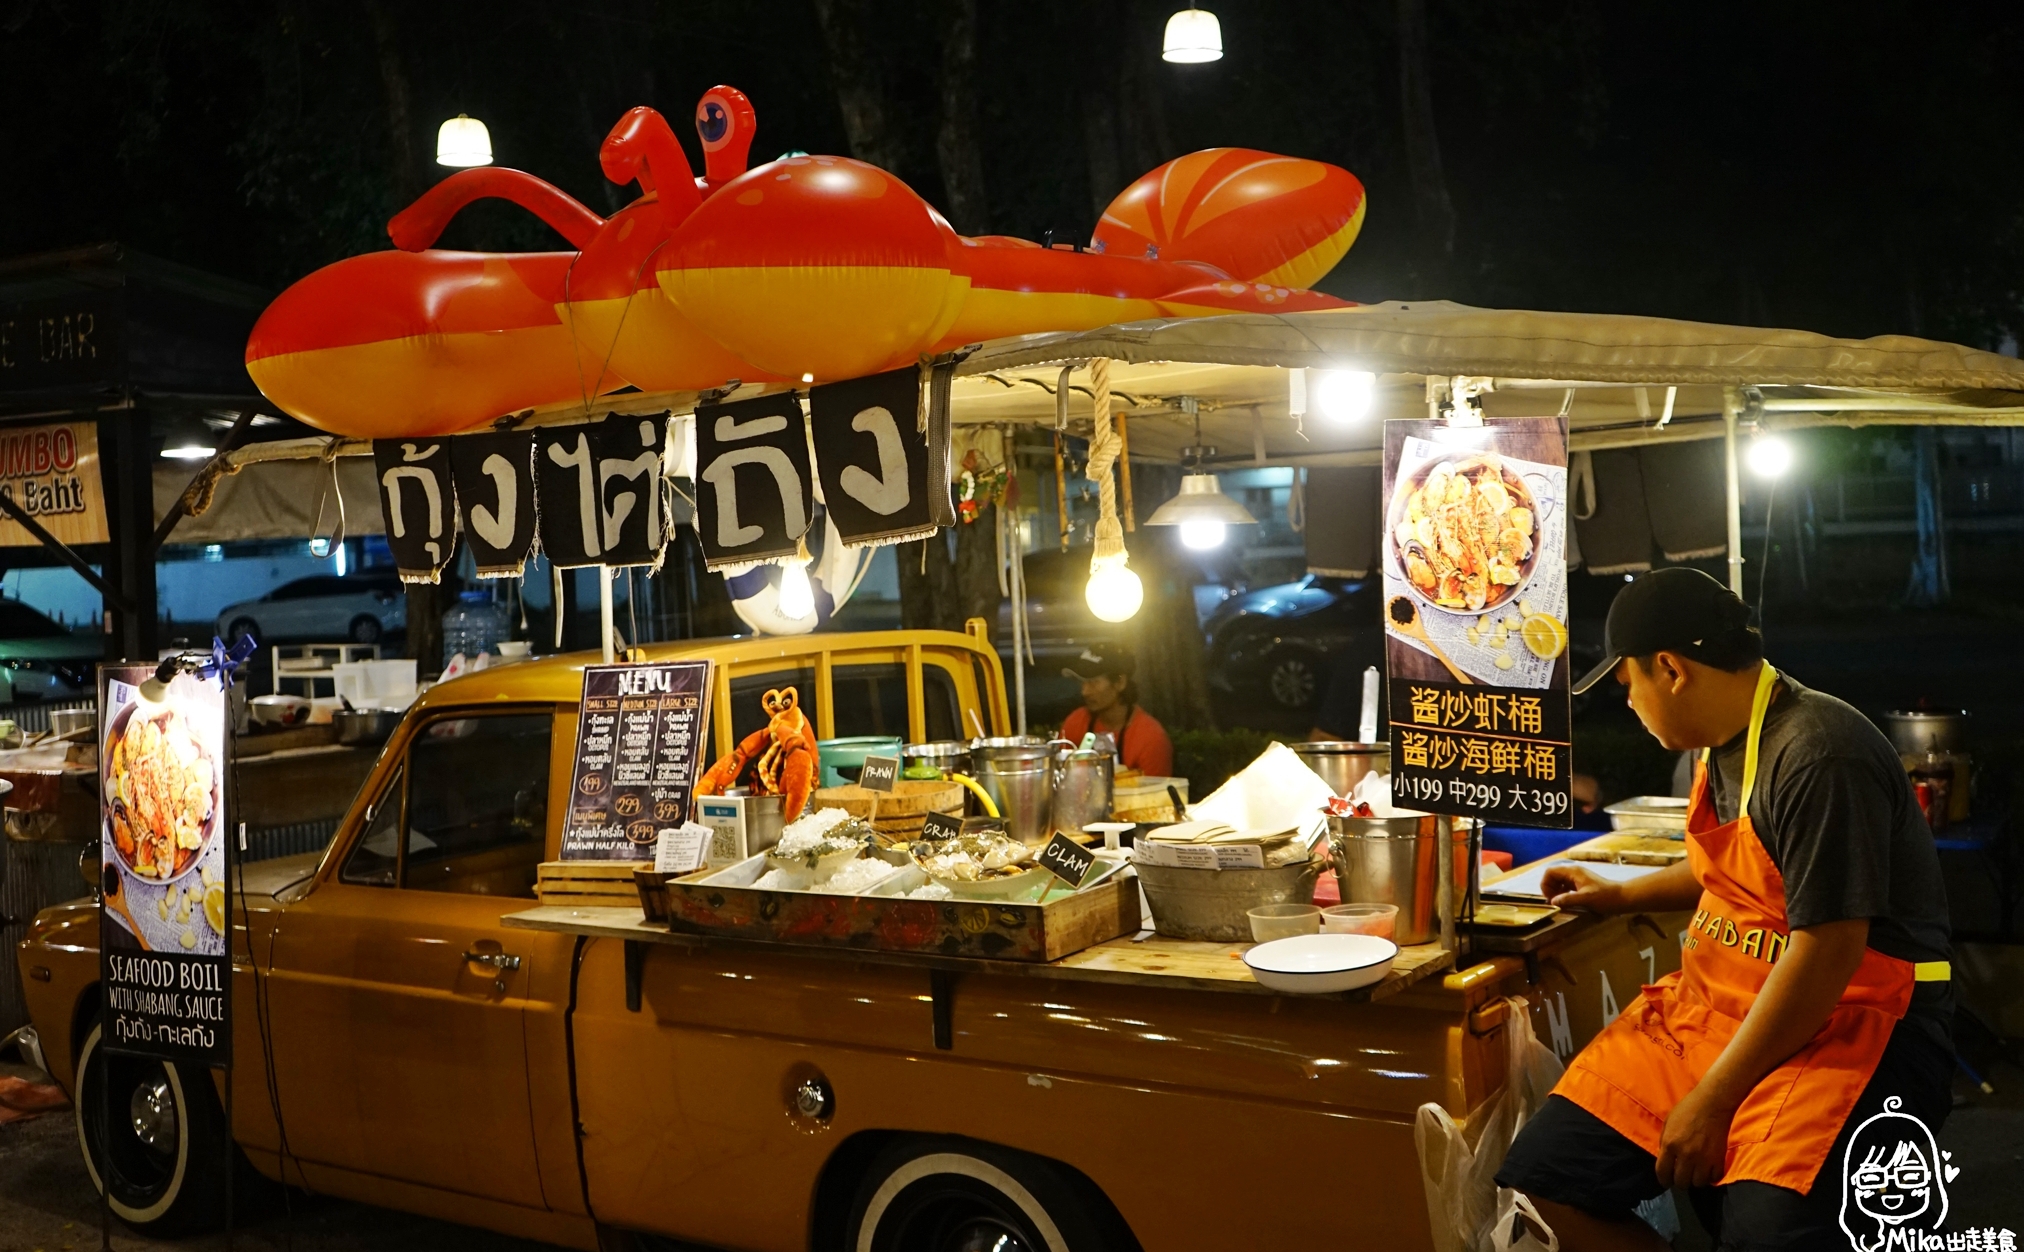 『泰國。華欣』 新美食廣場 Tamarind Market Chic and Chill 羅望子夜市｜每星期四五六日營業，聽歌吃街邊美食的泰國夜市情調。